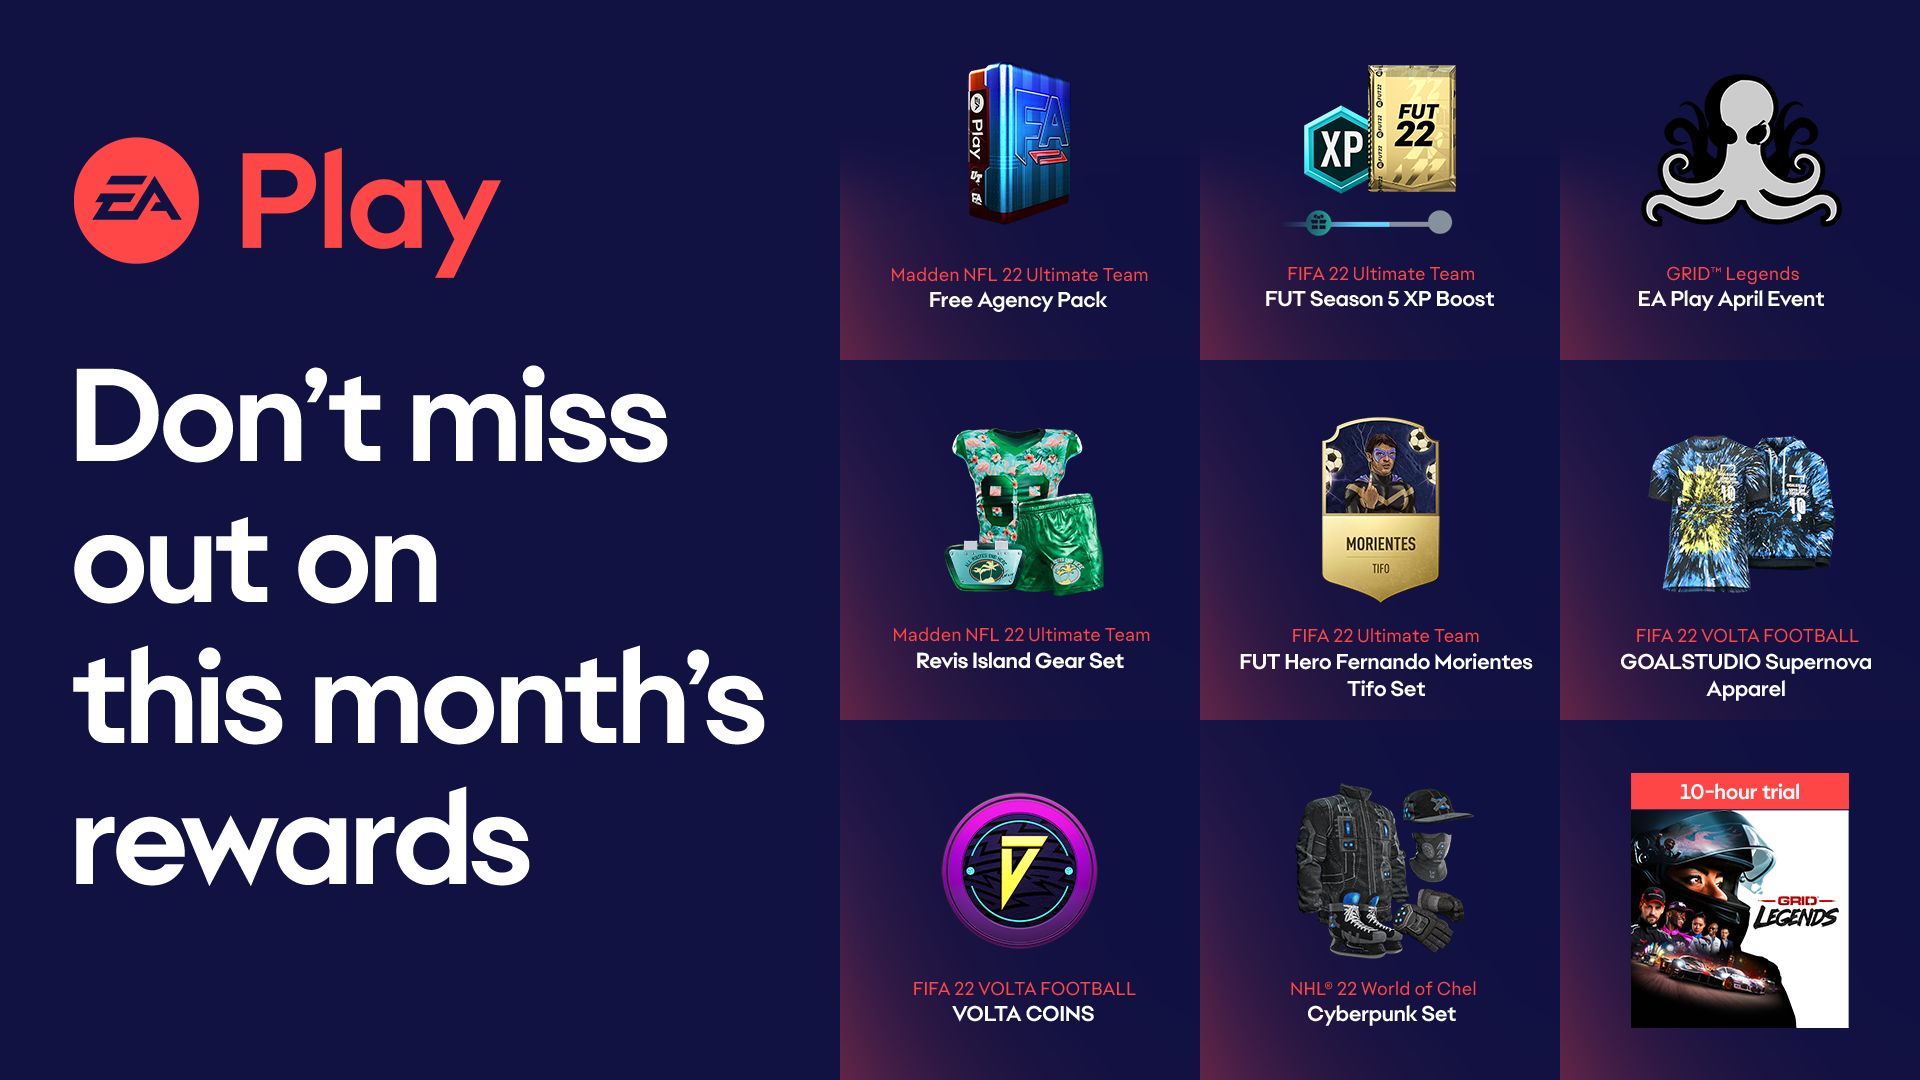 EA Play April Rewards Asset